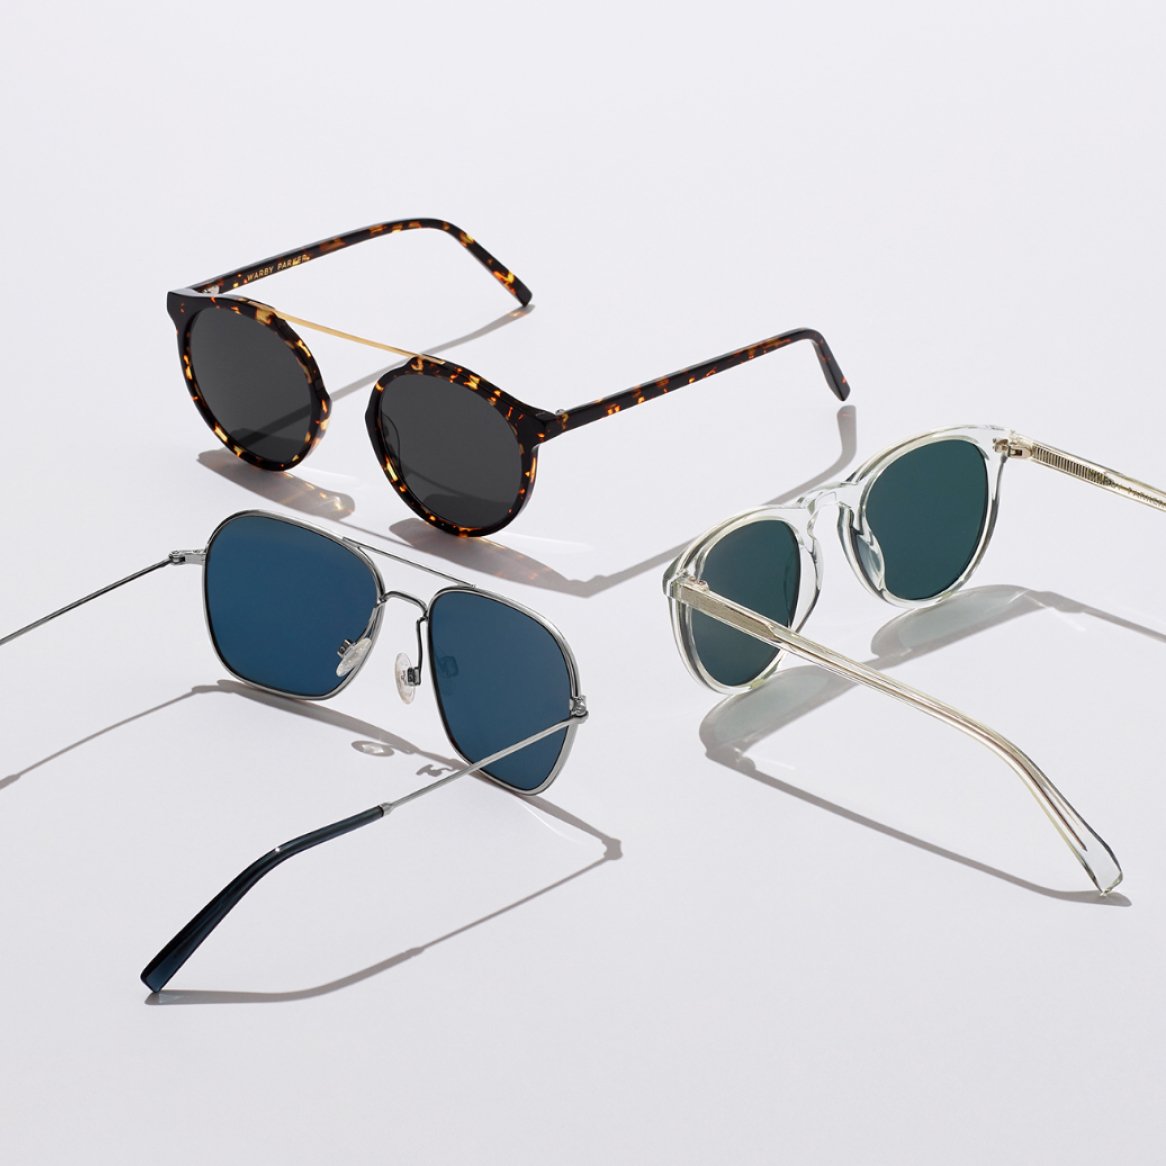 Three pairs of sunglasses